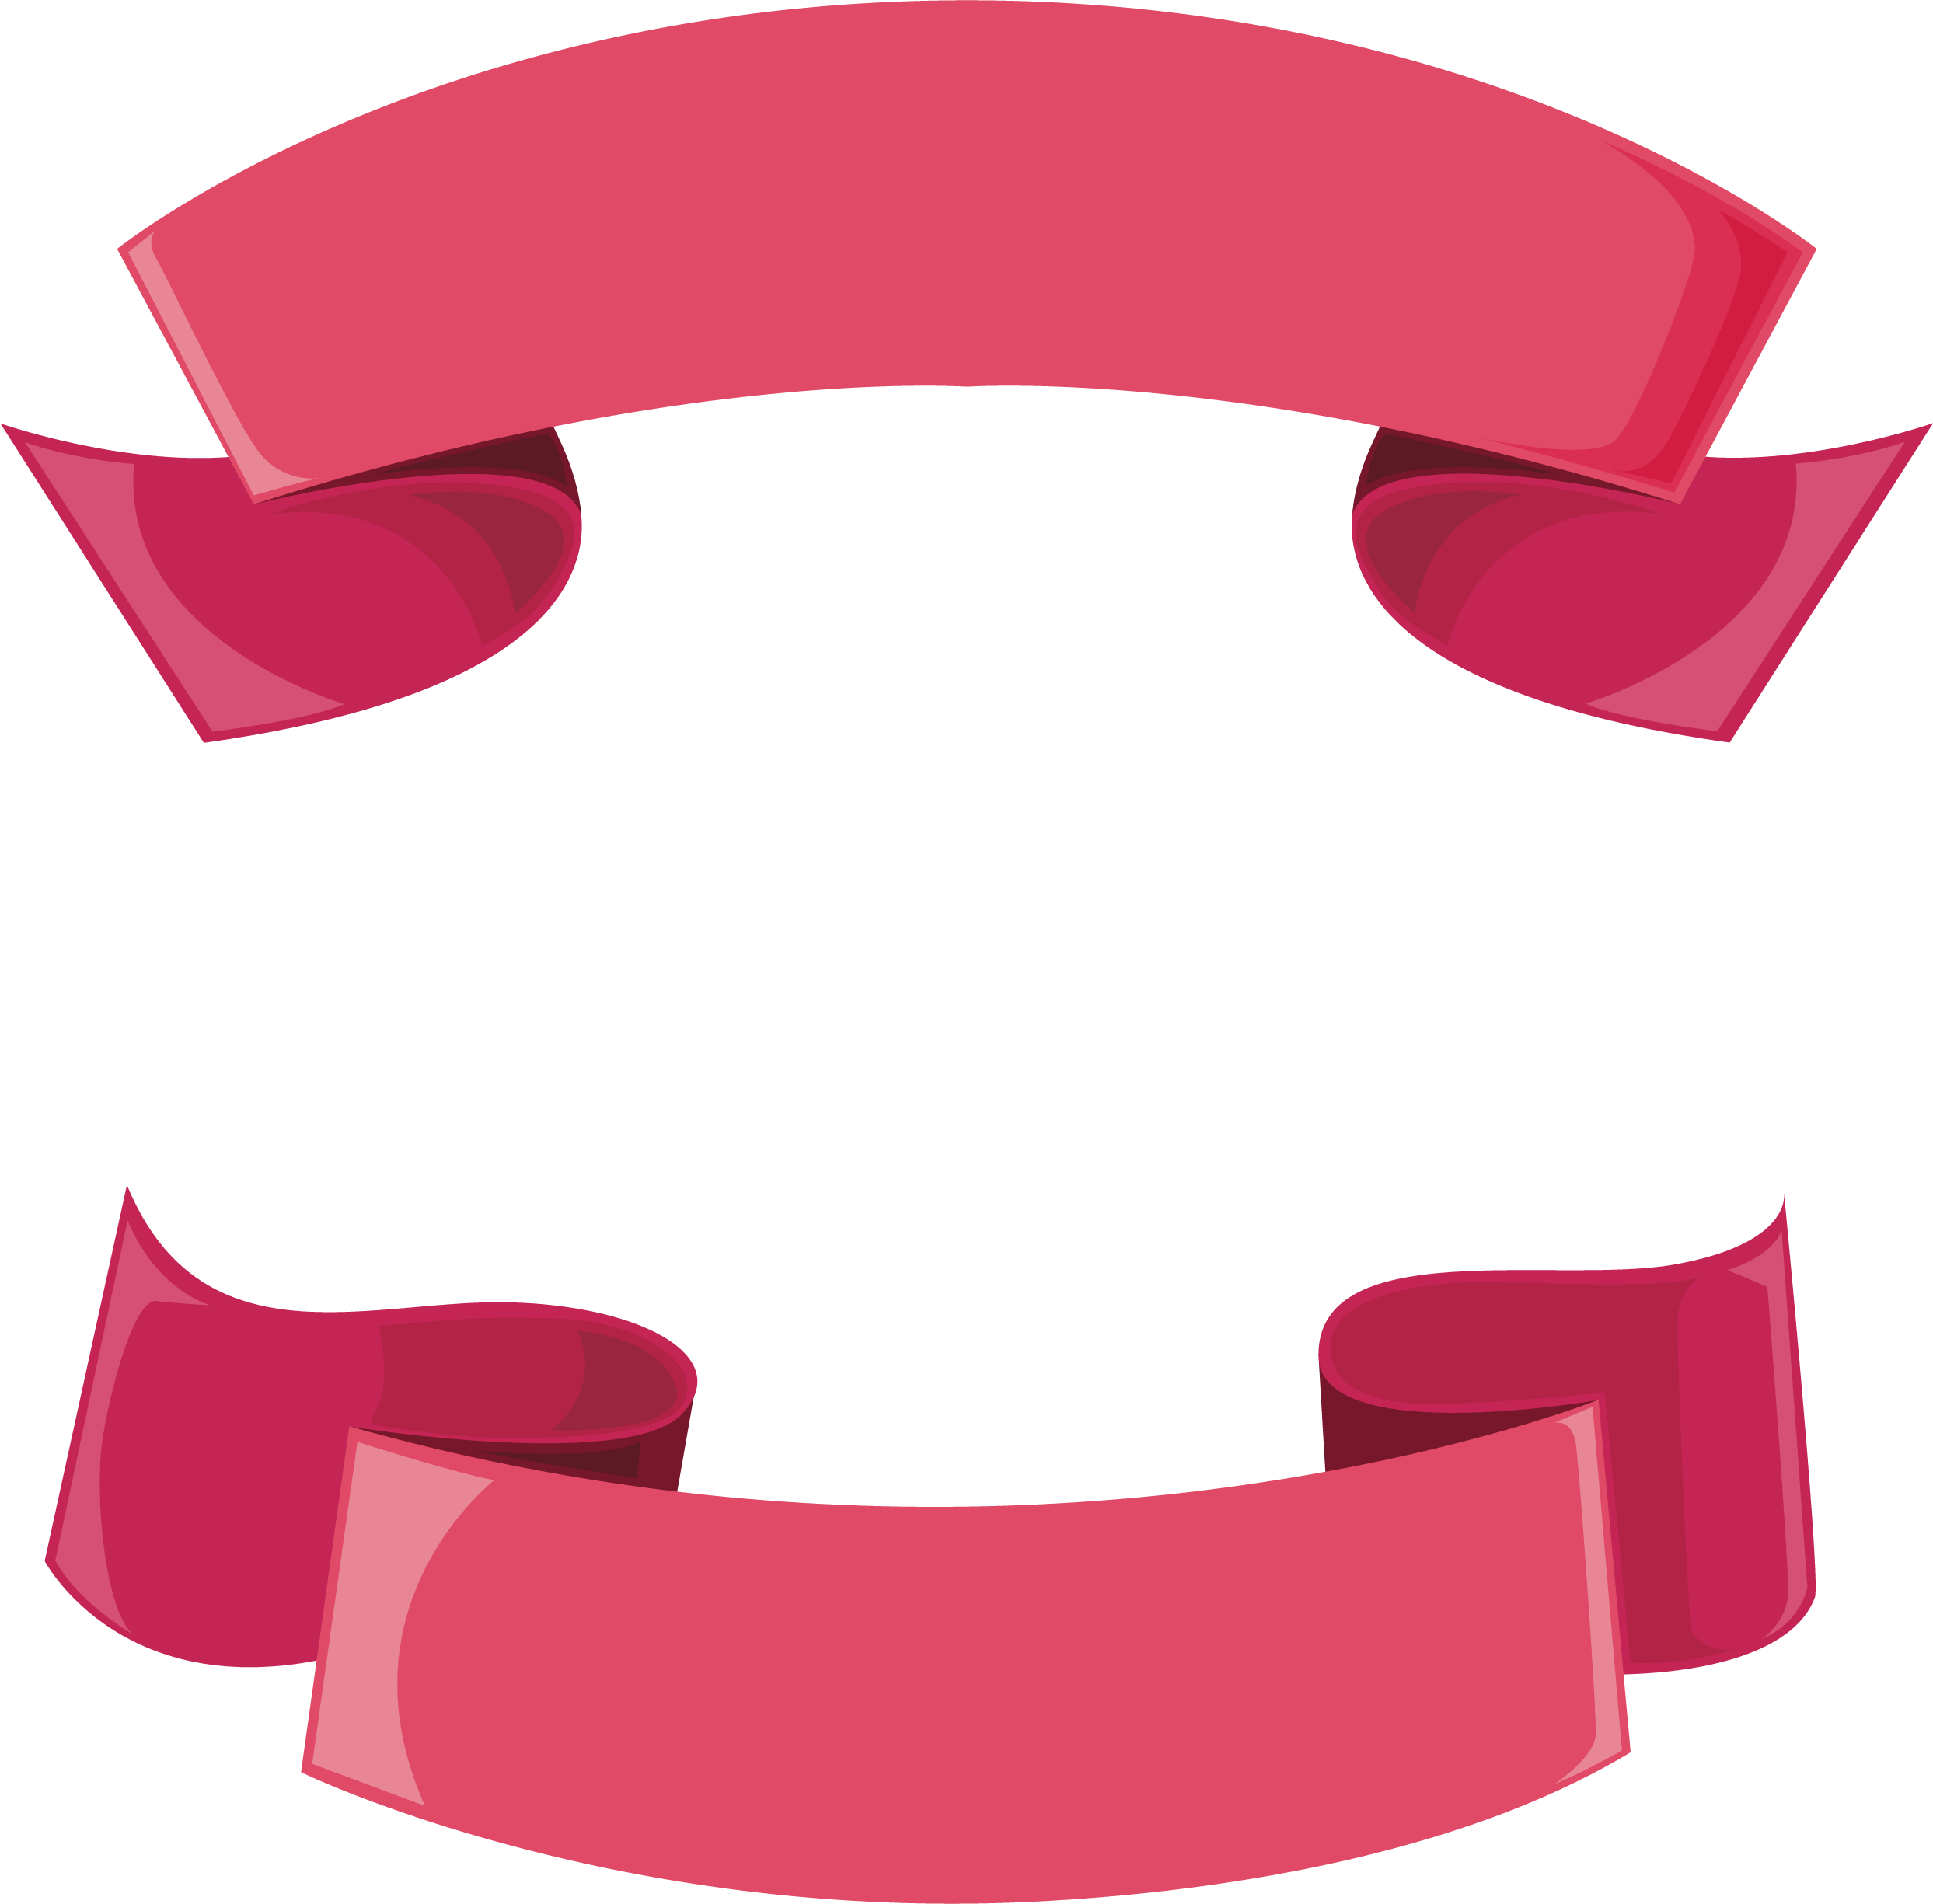 pink ribbon banner vector